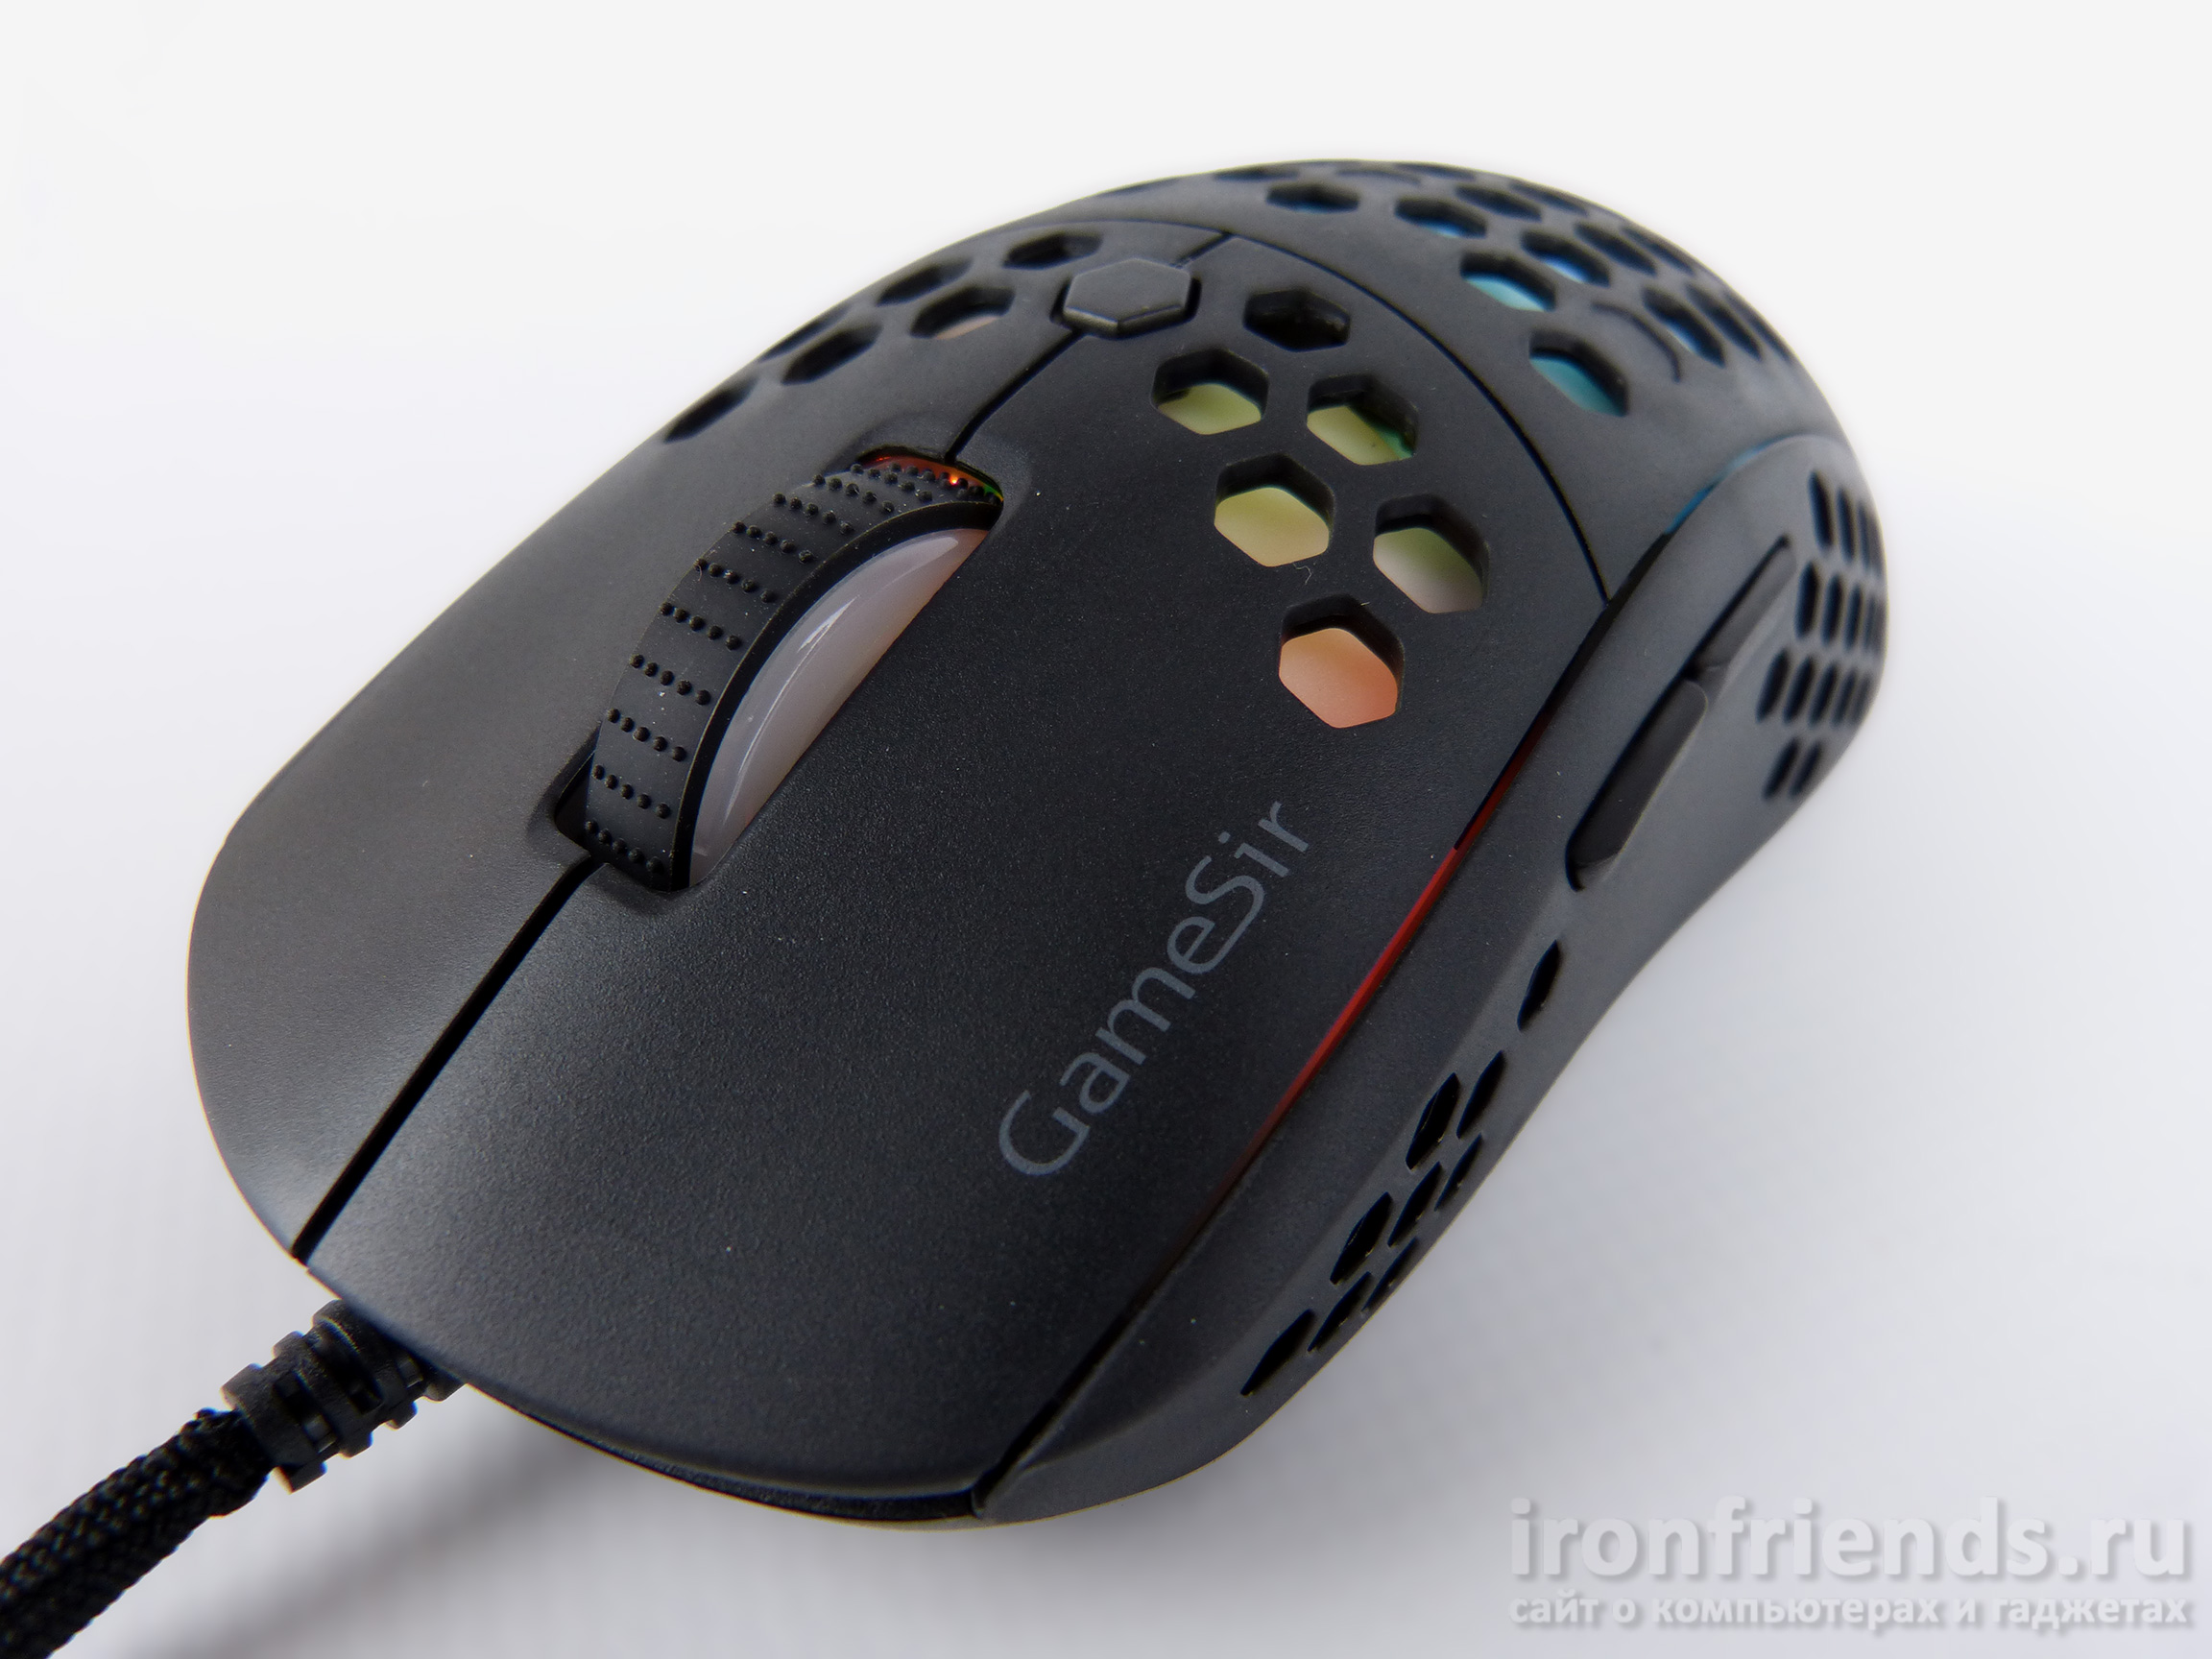 Игровая мышь GameSir GM400